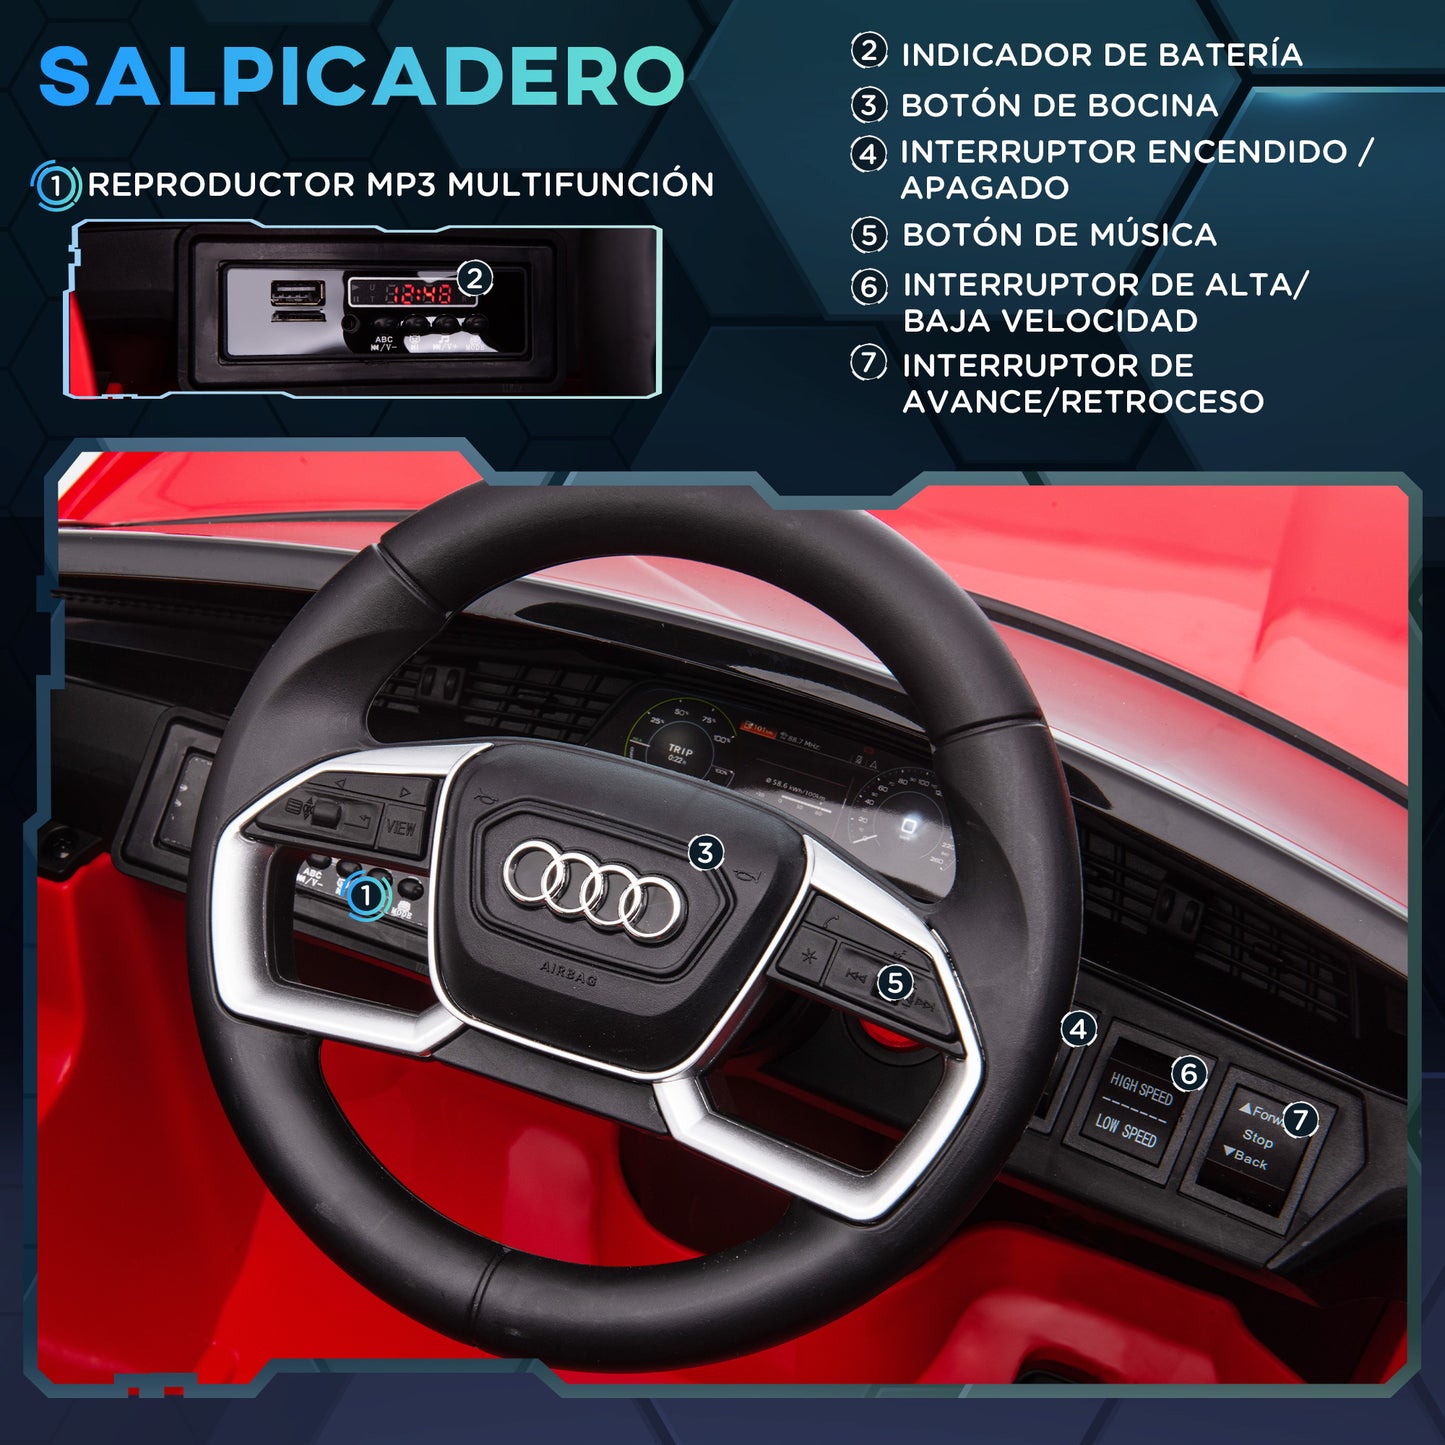 HOMCOM Coche Eléctrico Audi E-tron 12V para Niños de +3 Años con Mando a Distancia Faros Bocina Música MP3 TF USB y Apertura de Puerta 3-5 km/h 108x60x47 cm Rojo